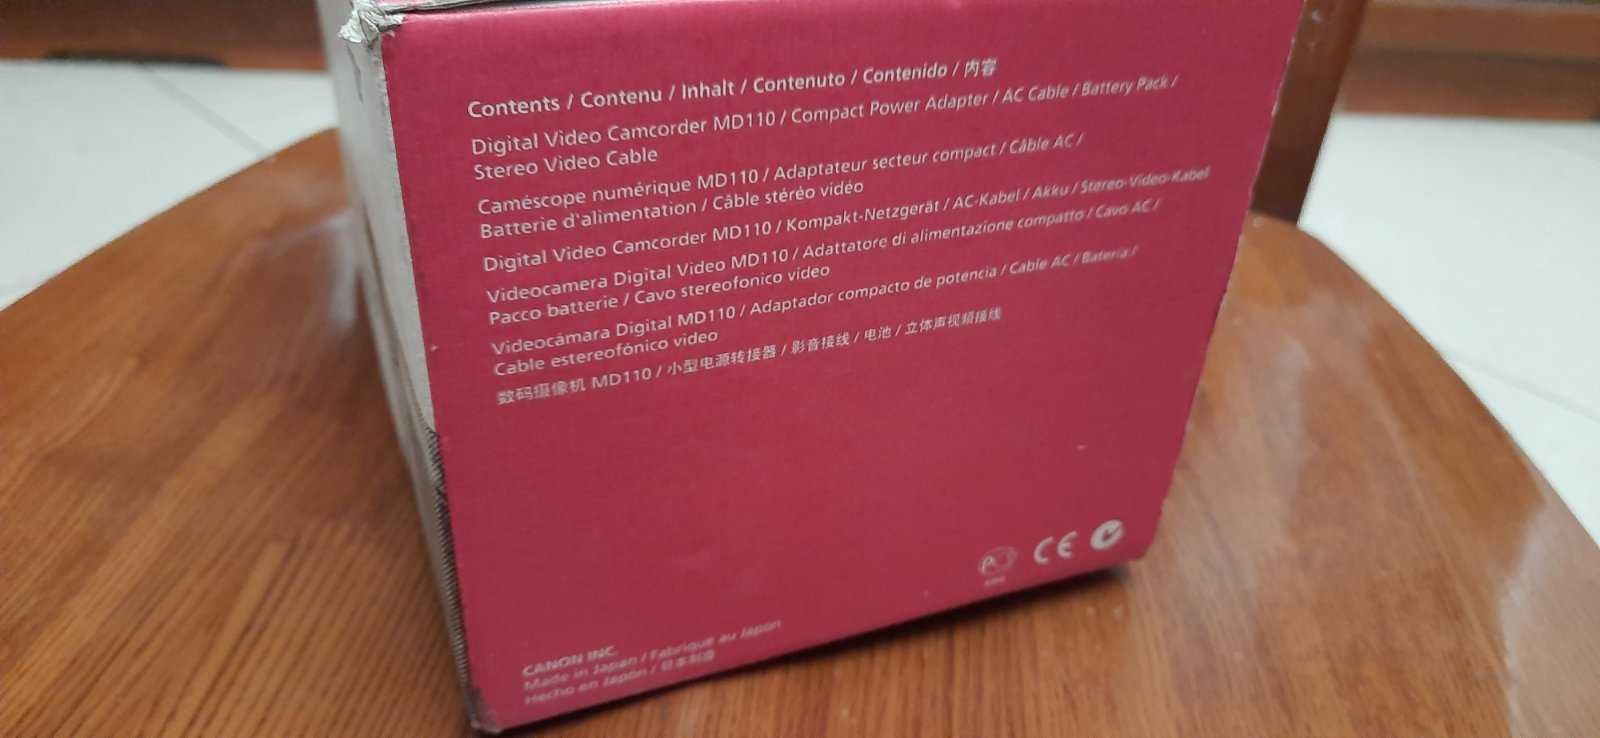 Цифровая видеокамера Canon MD110 новая в коробке с паспортом